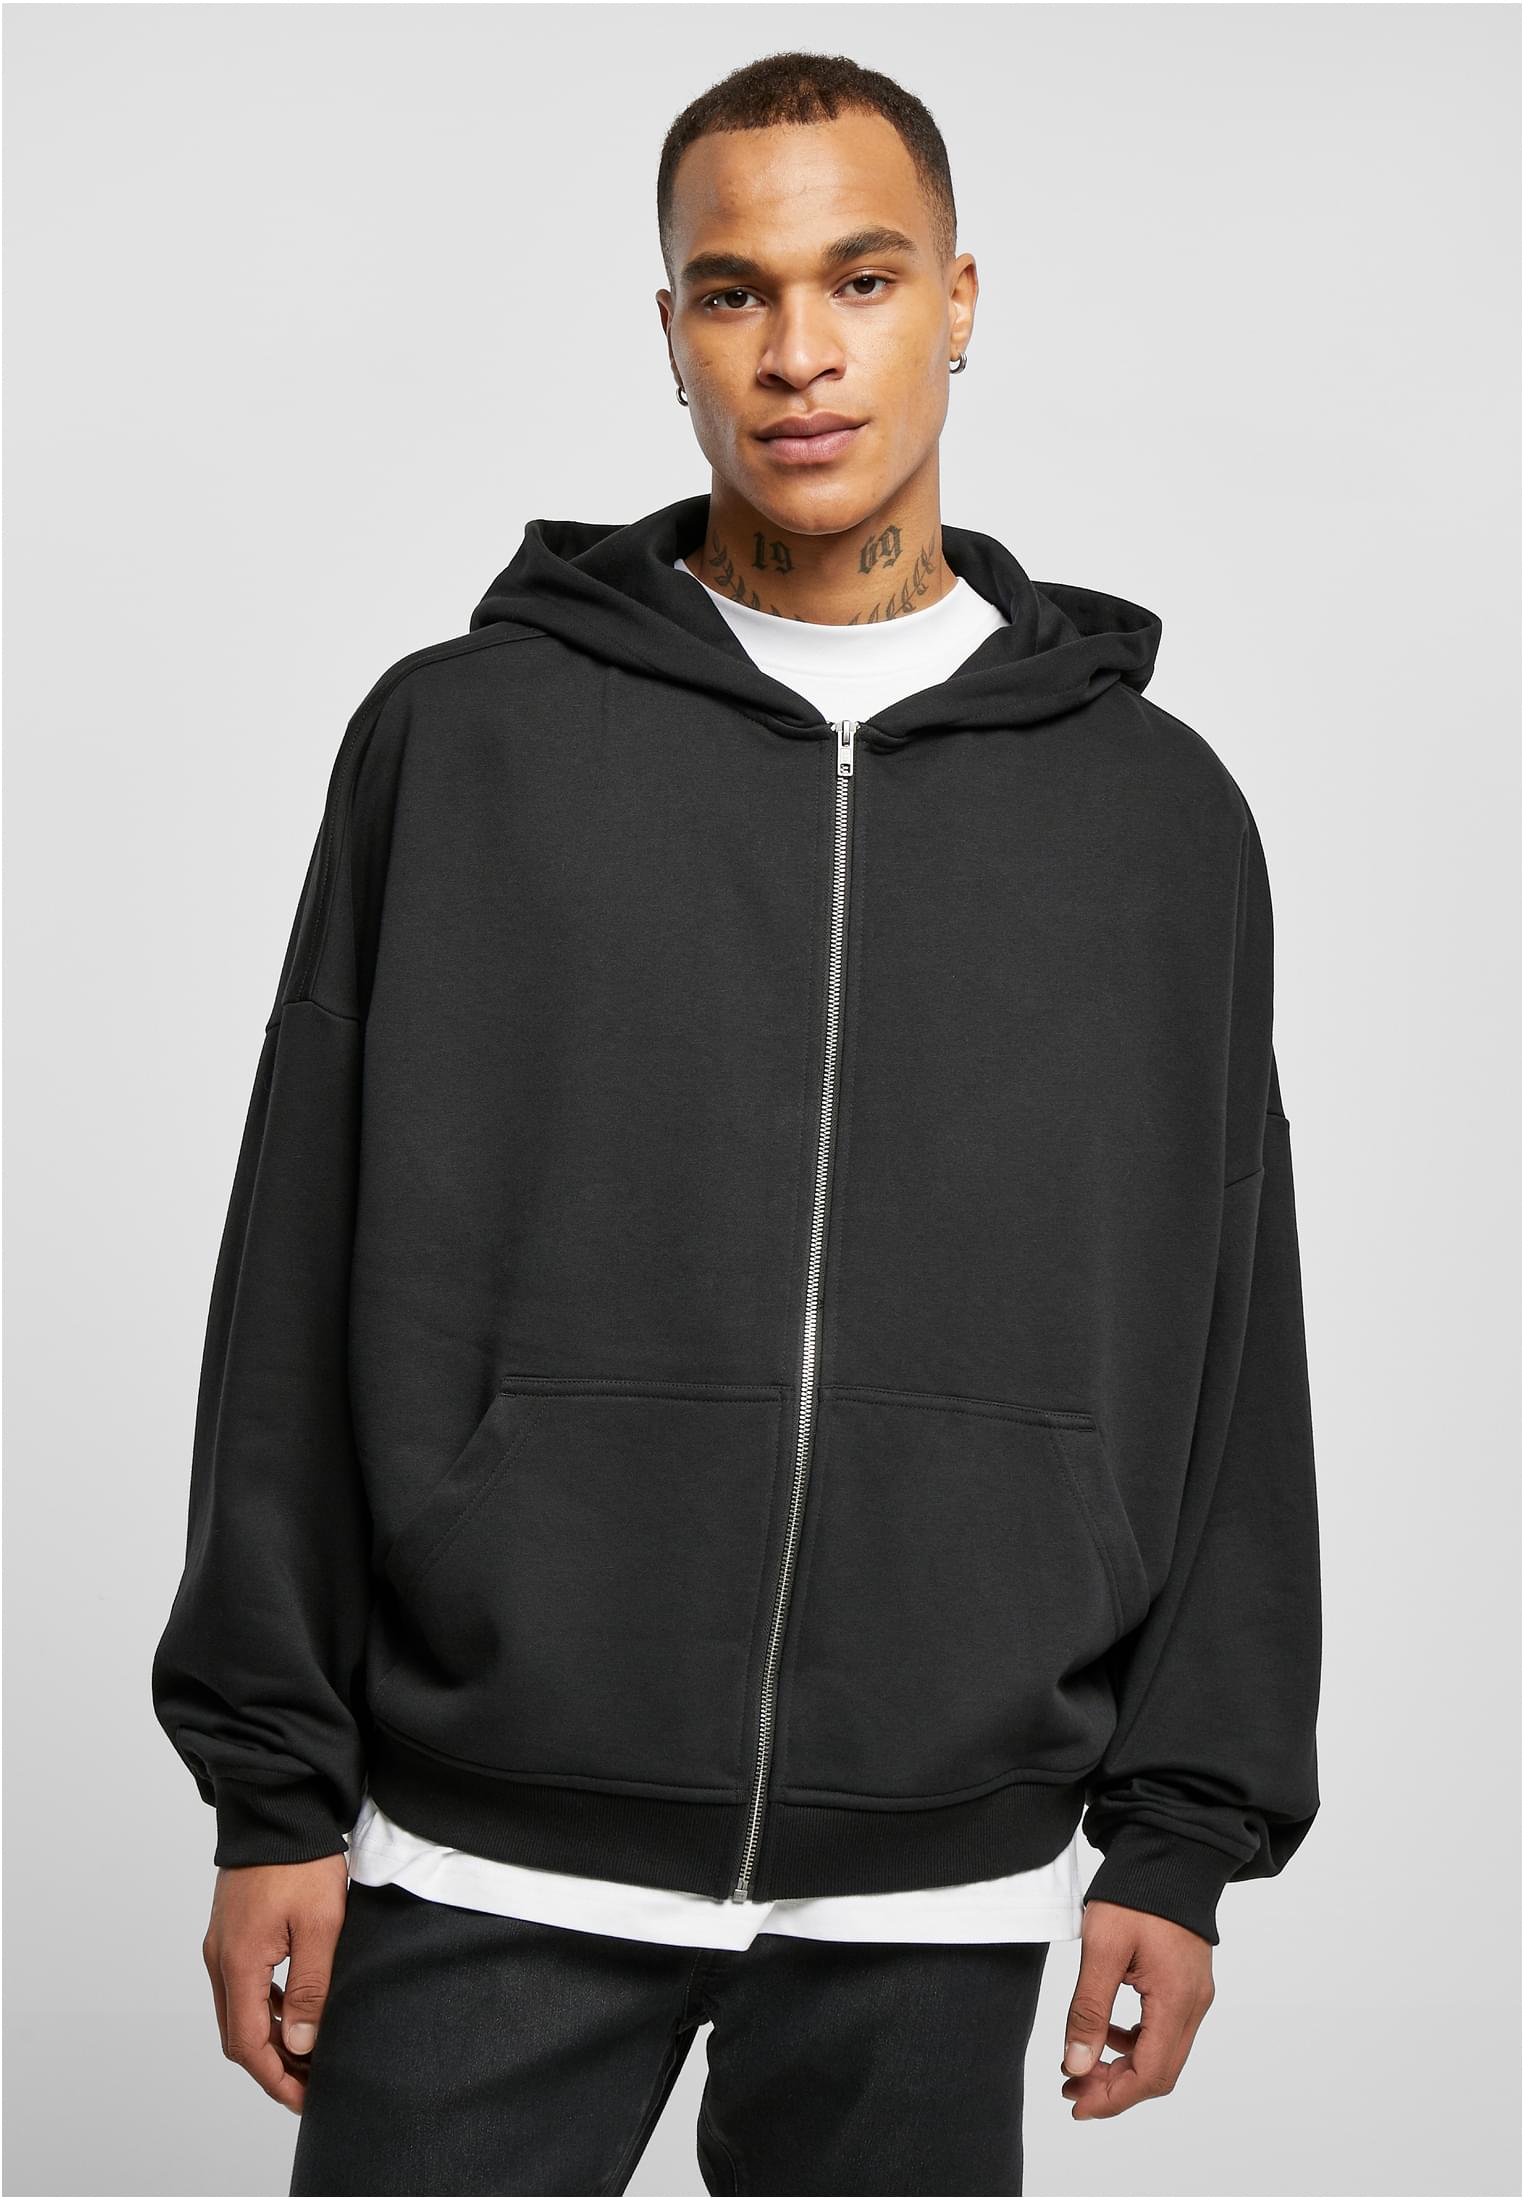 90s zip-up sweatshirt black